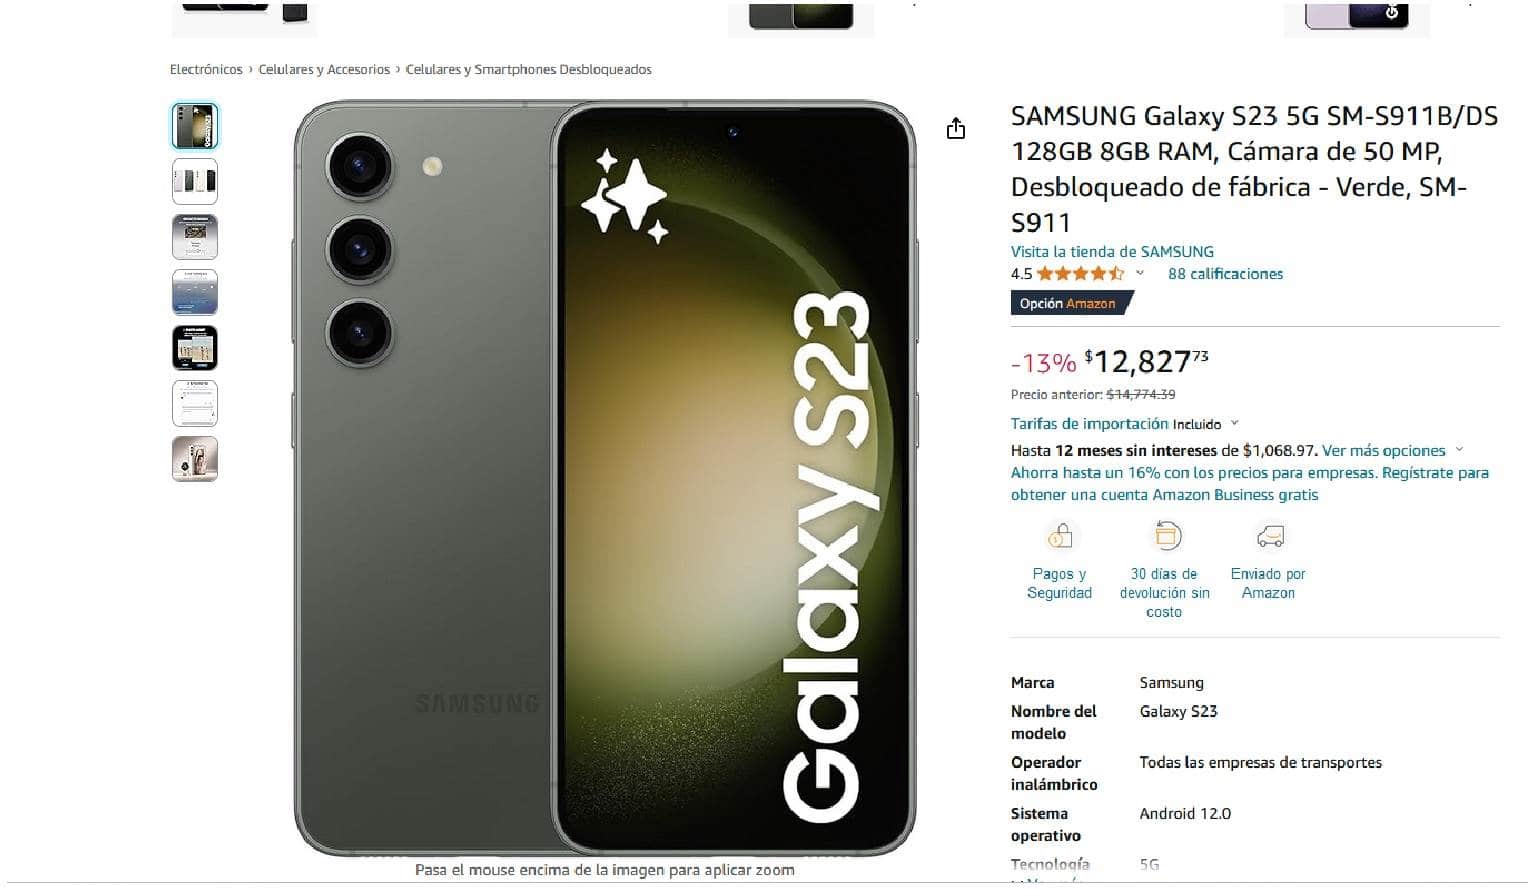 Precio del smartphone Samsung Galaxy S23 en Amazon